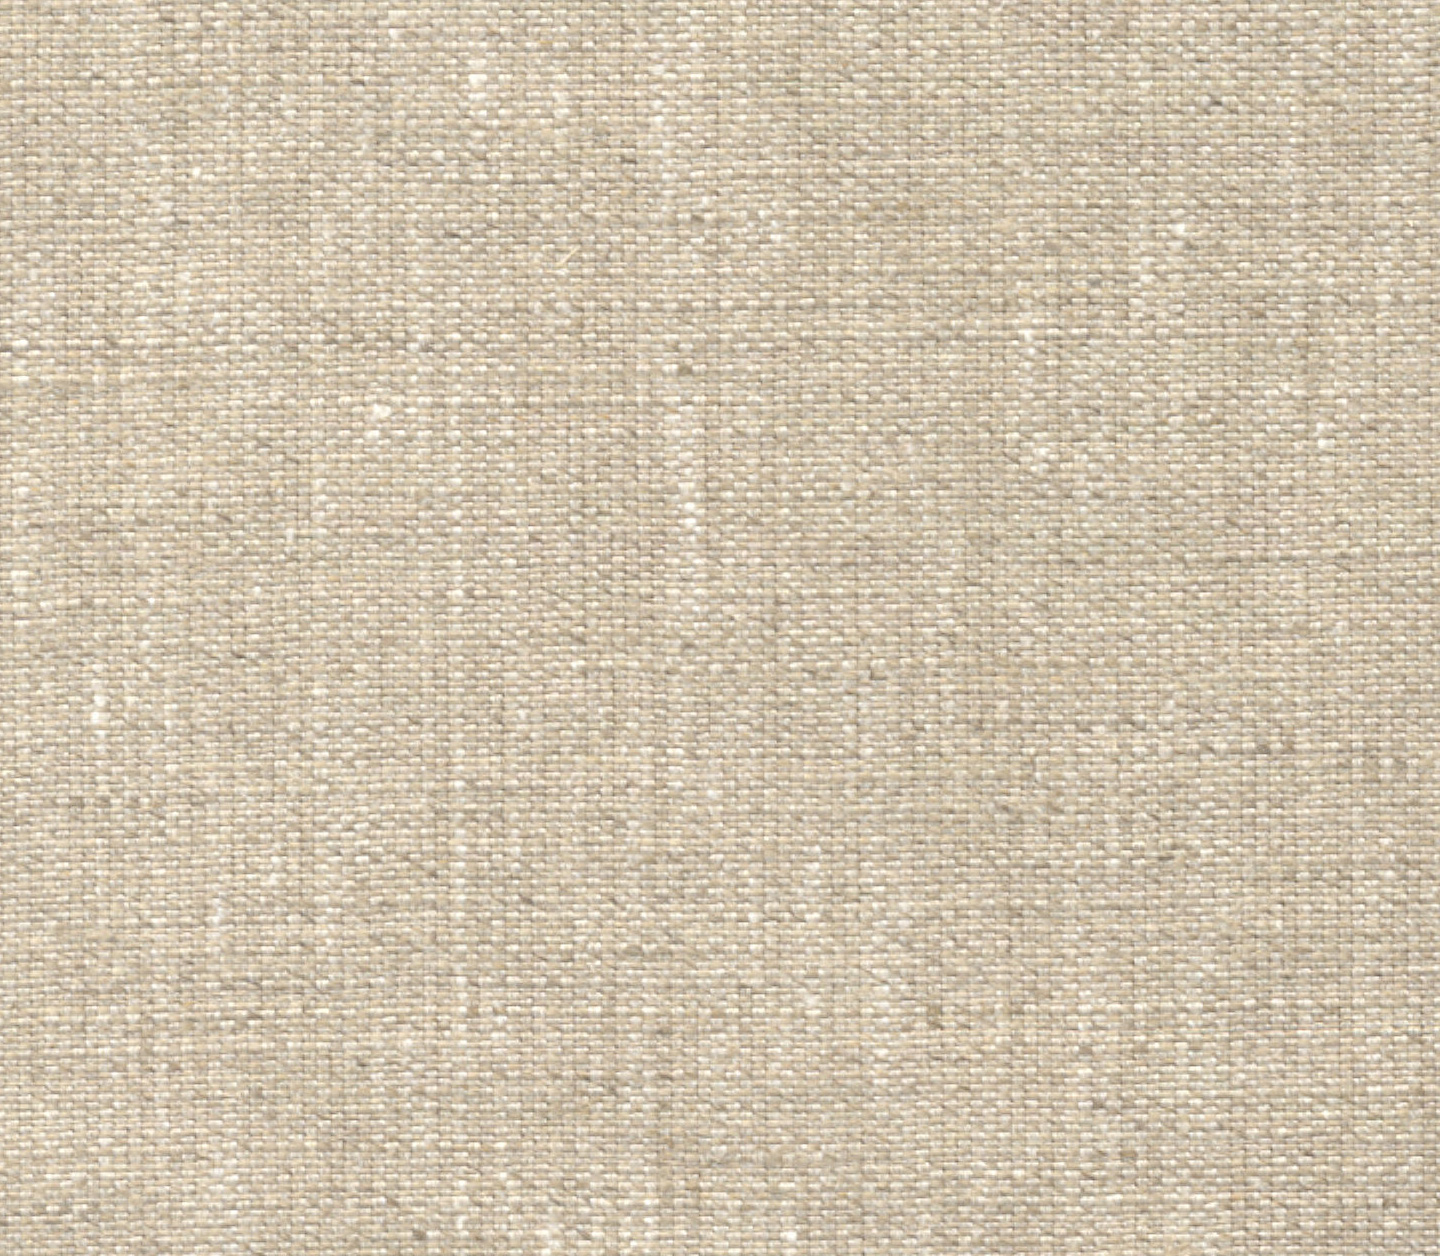 Linen Wallpaper Designs Grasscloth